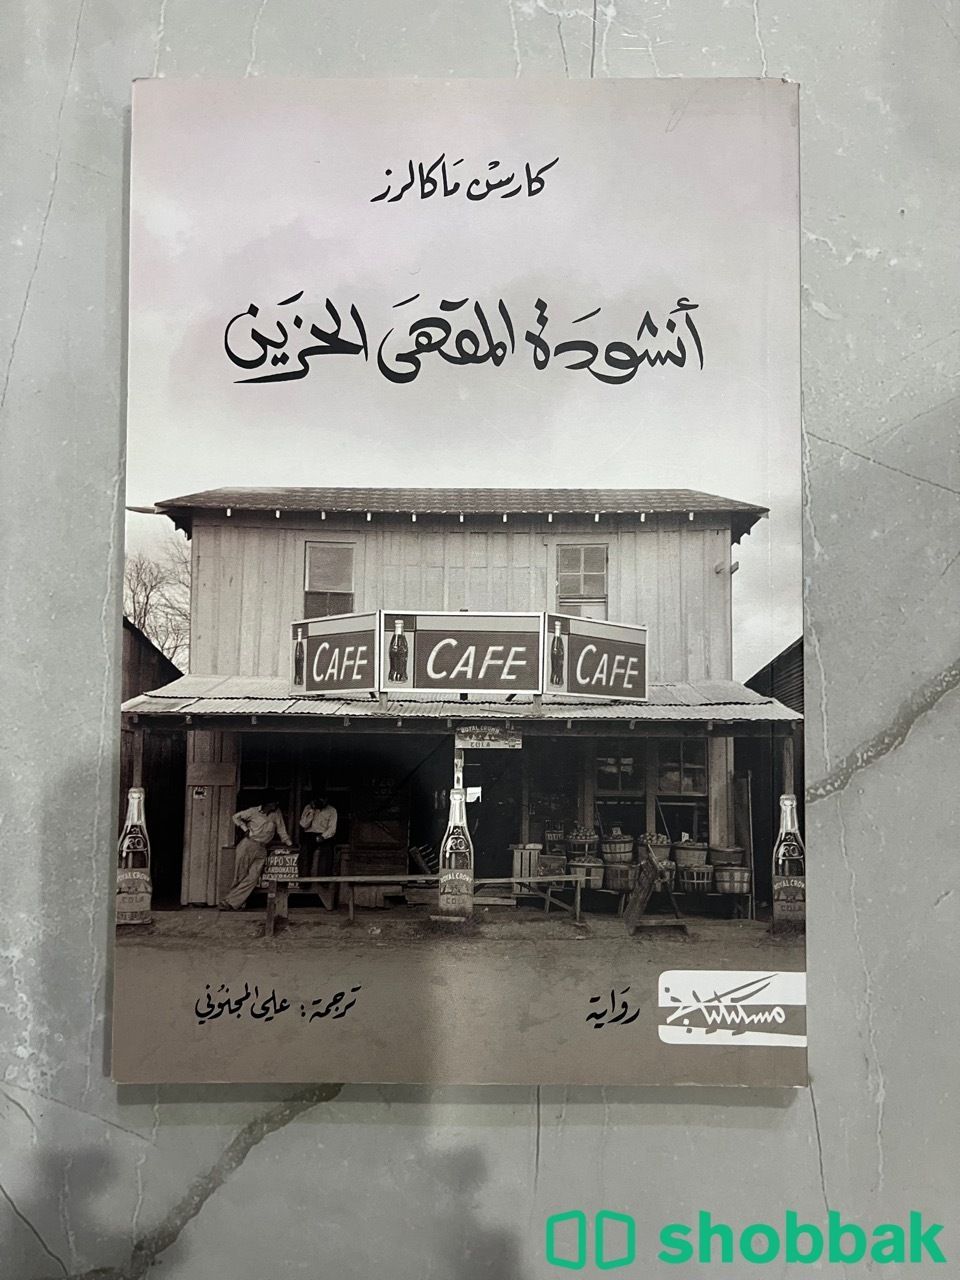 كتاب انشودة المقهى الحزين Shobbak Saudi Arabia